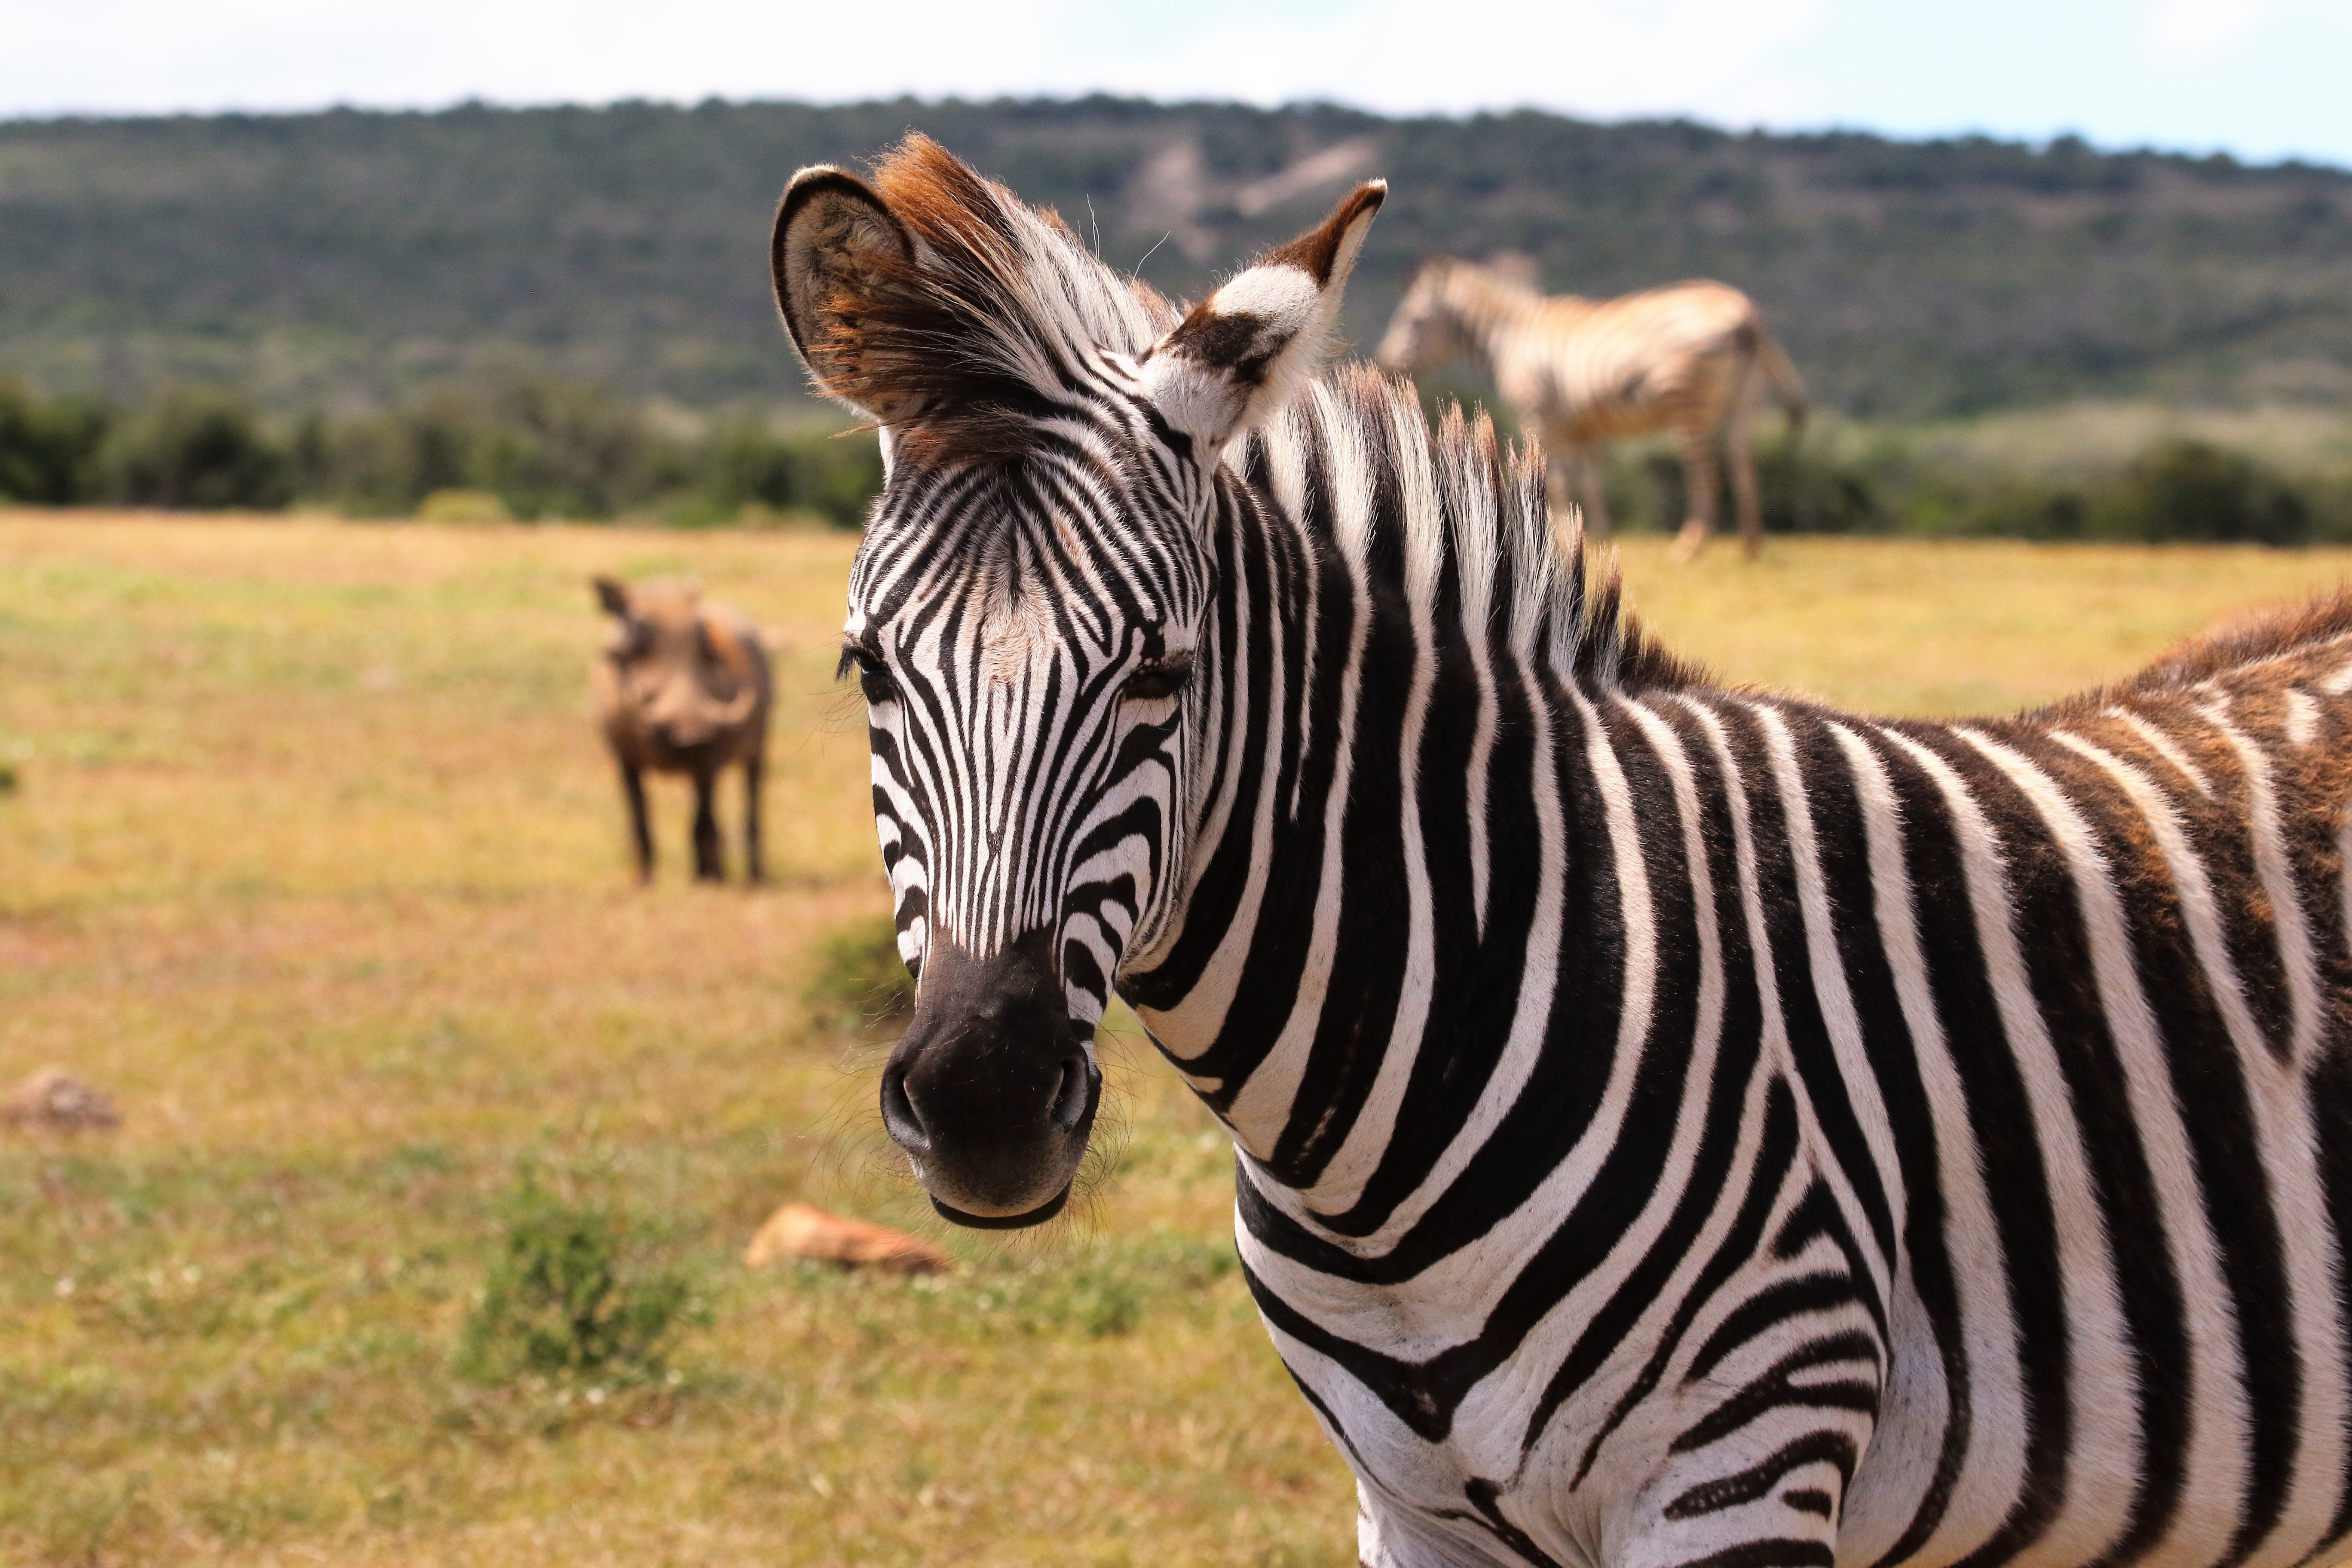 Zebra on Green Grass Field, Africa, Wildlife, Wild animal, Wild, HQ Photo